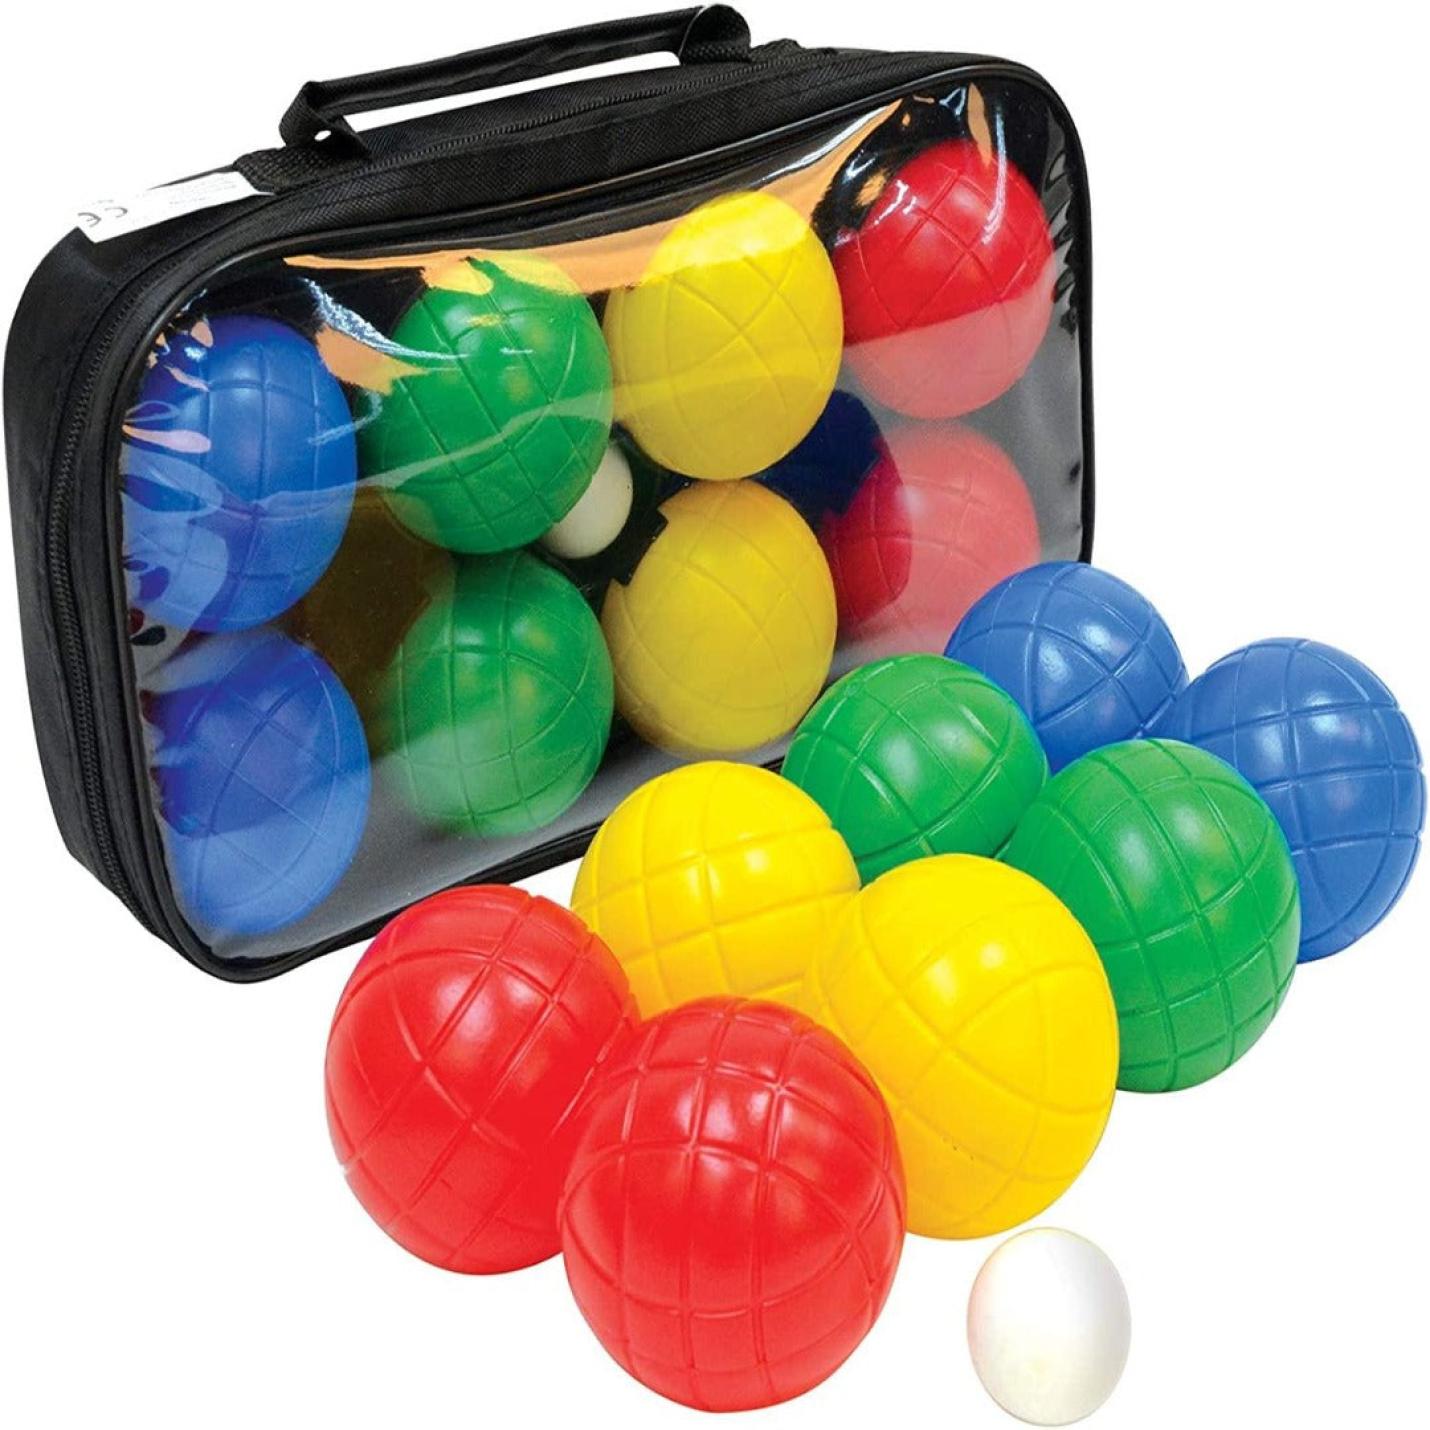 Set voor jeu de boules met 4 kunststof ballen, 1 doelbal en een hersluitbare draagtas voor eenvoudig transport.